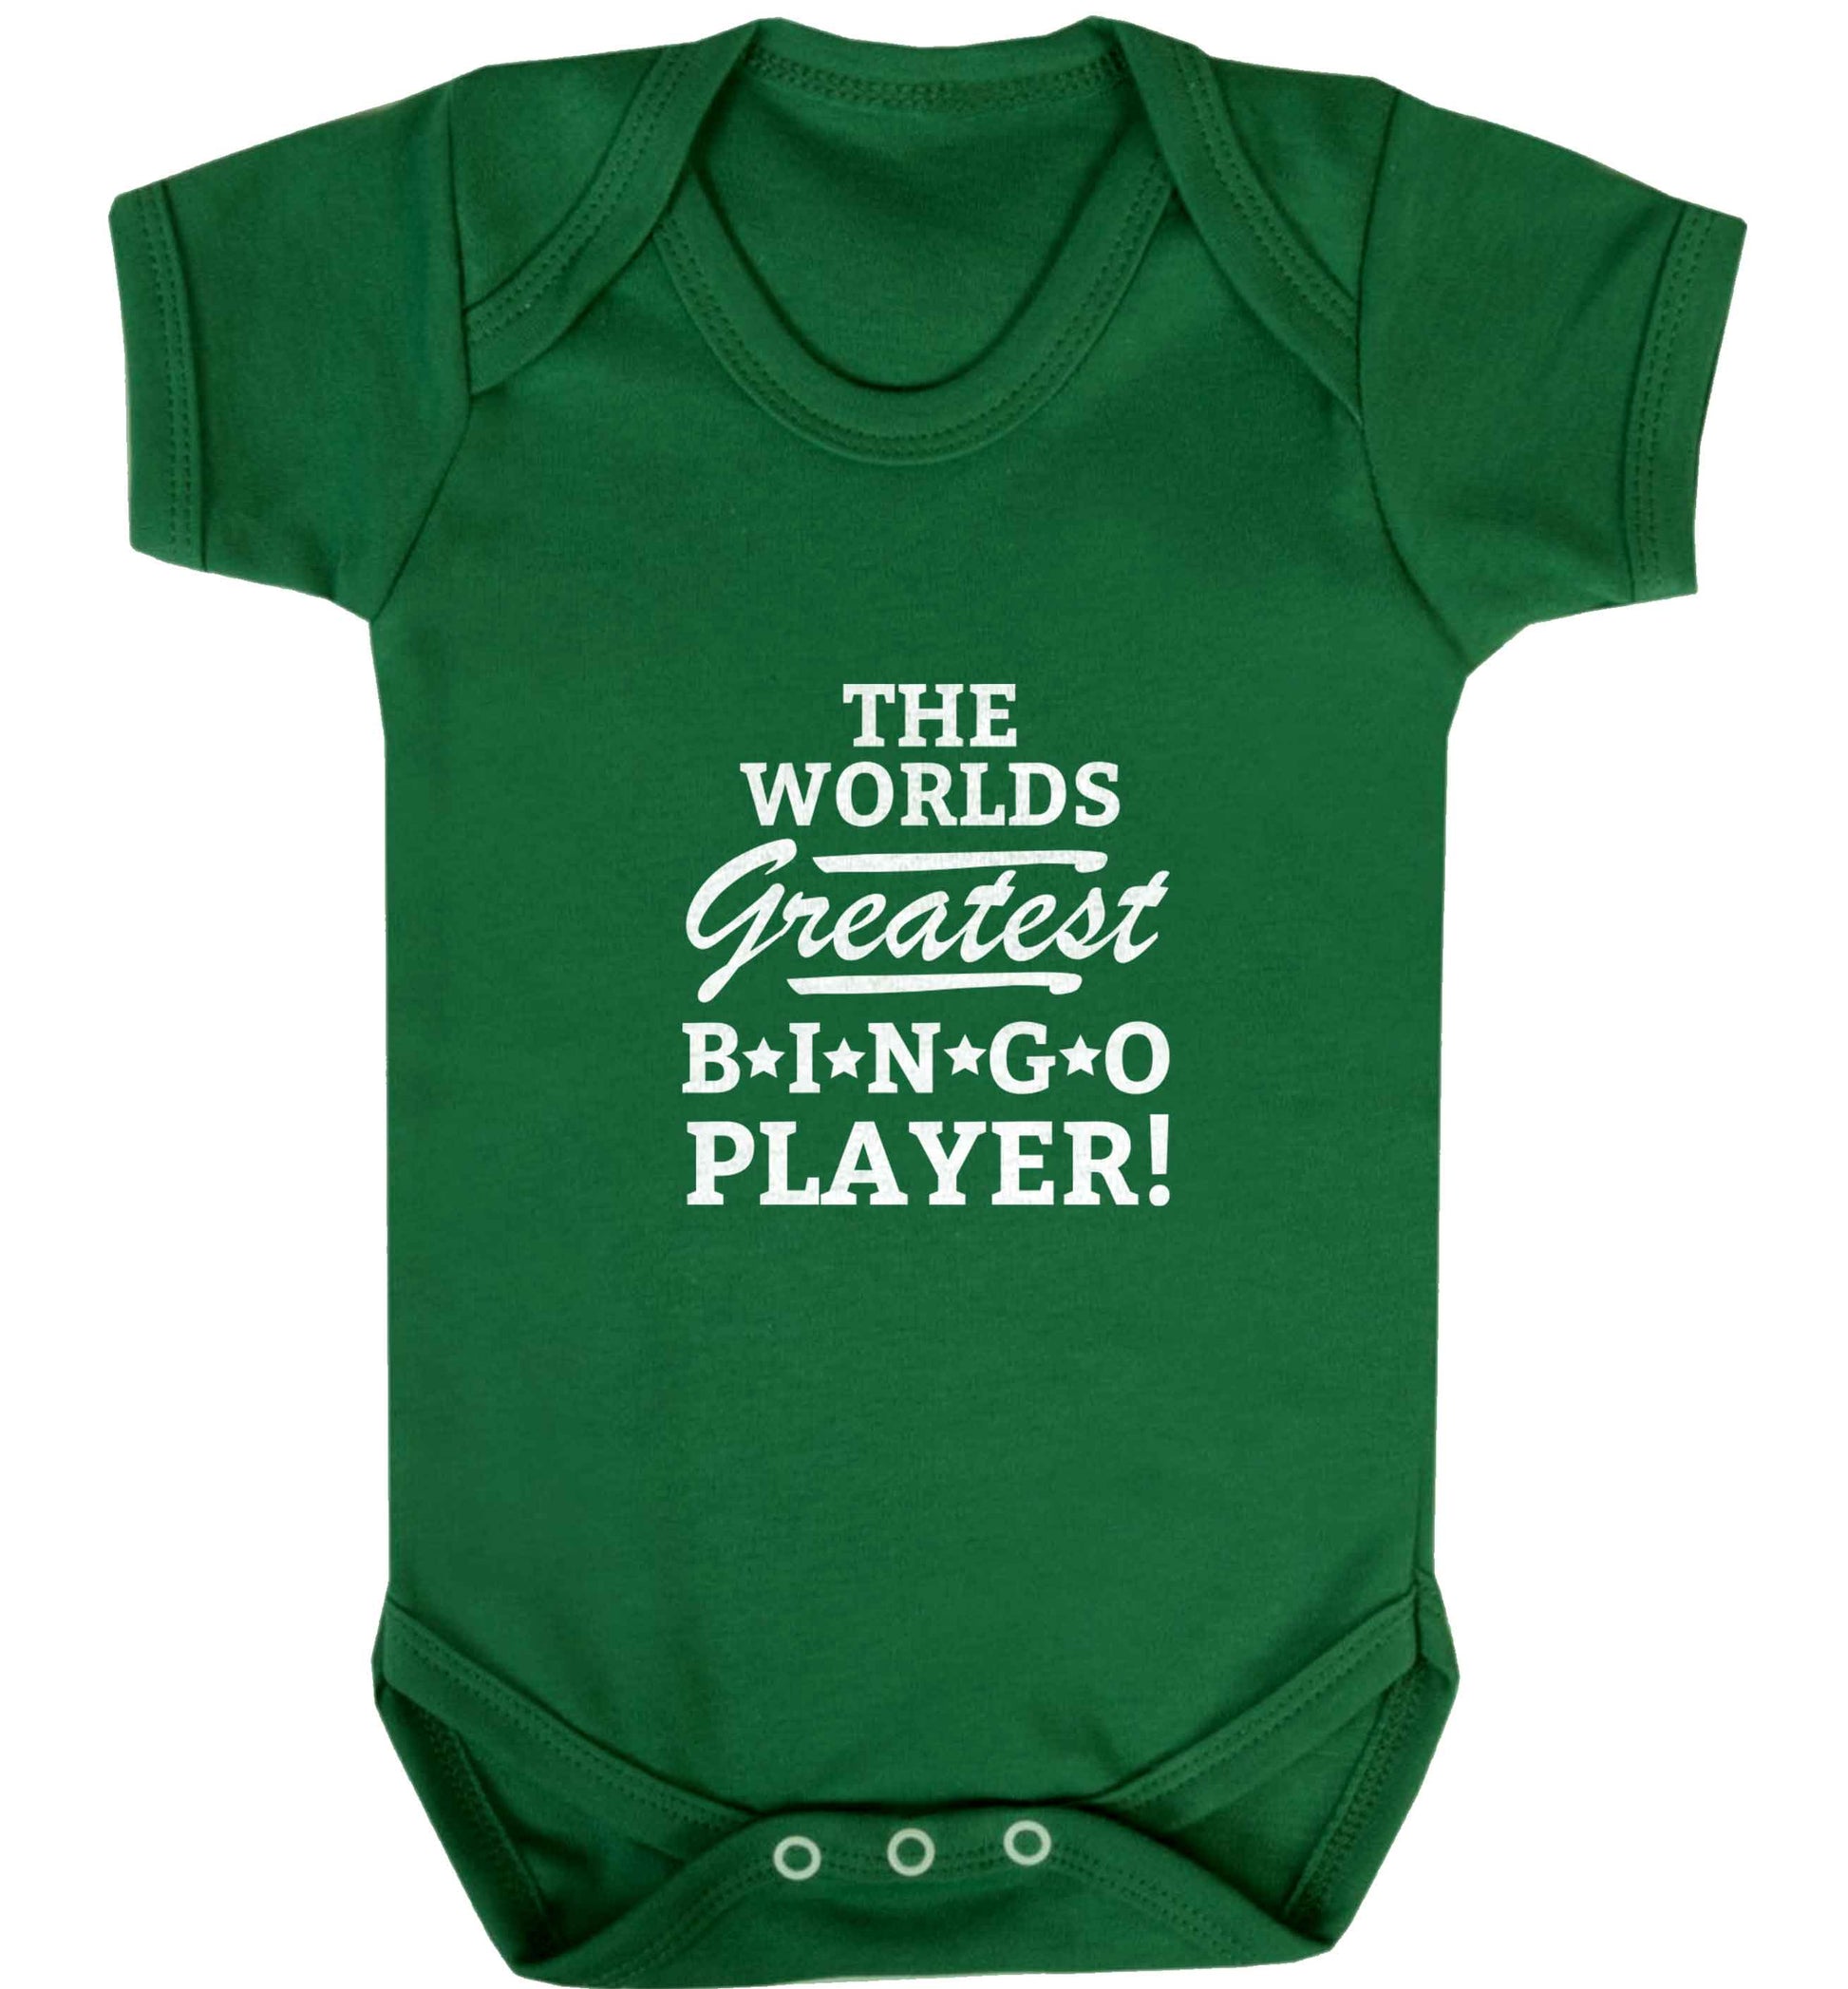 Worlds greatest bingo player baby vest green 18-24 months